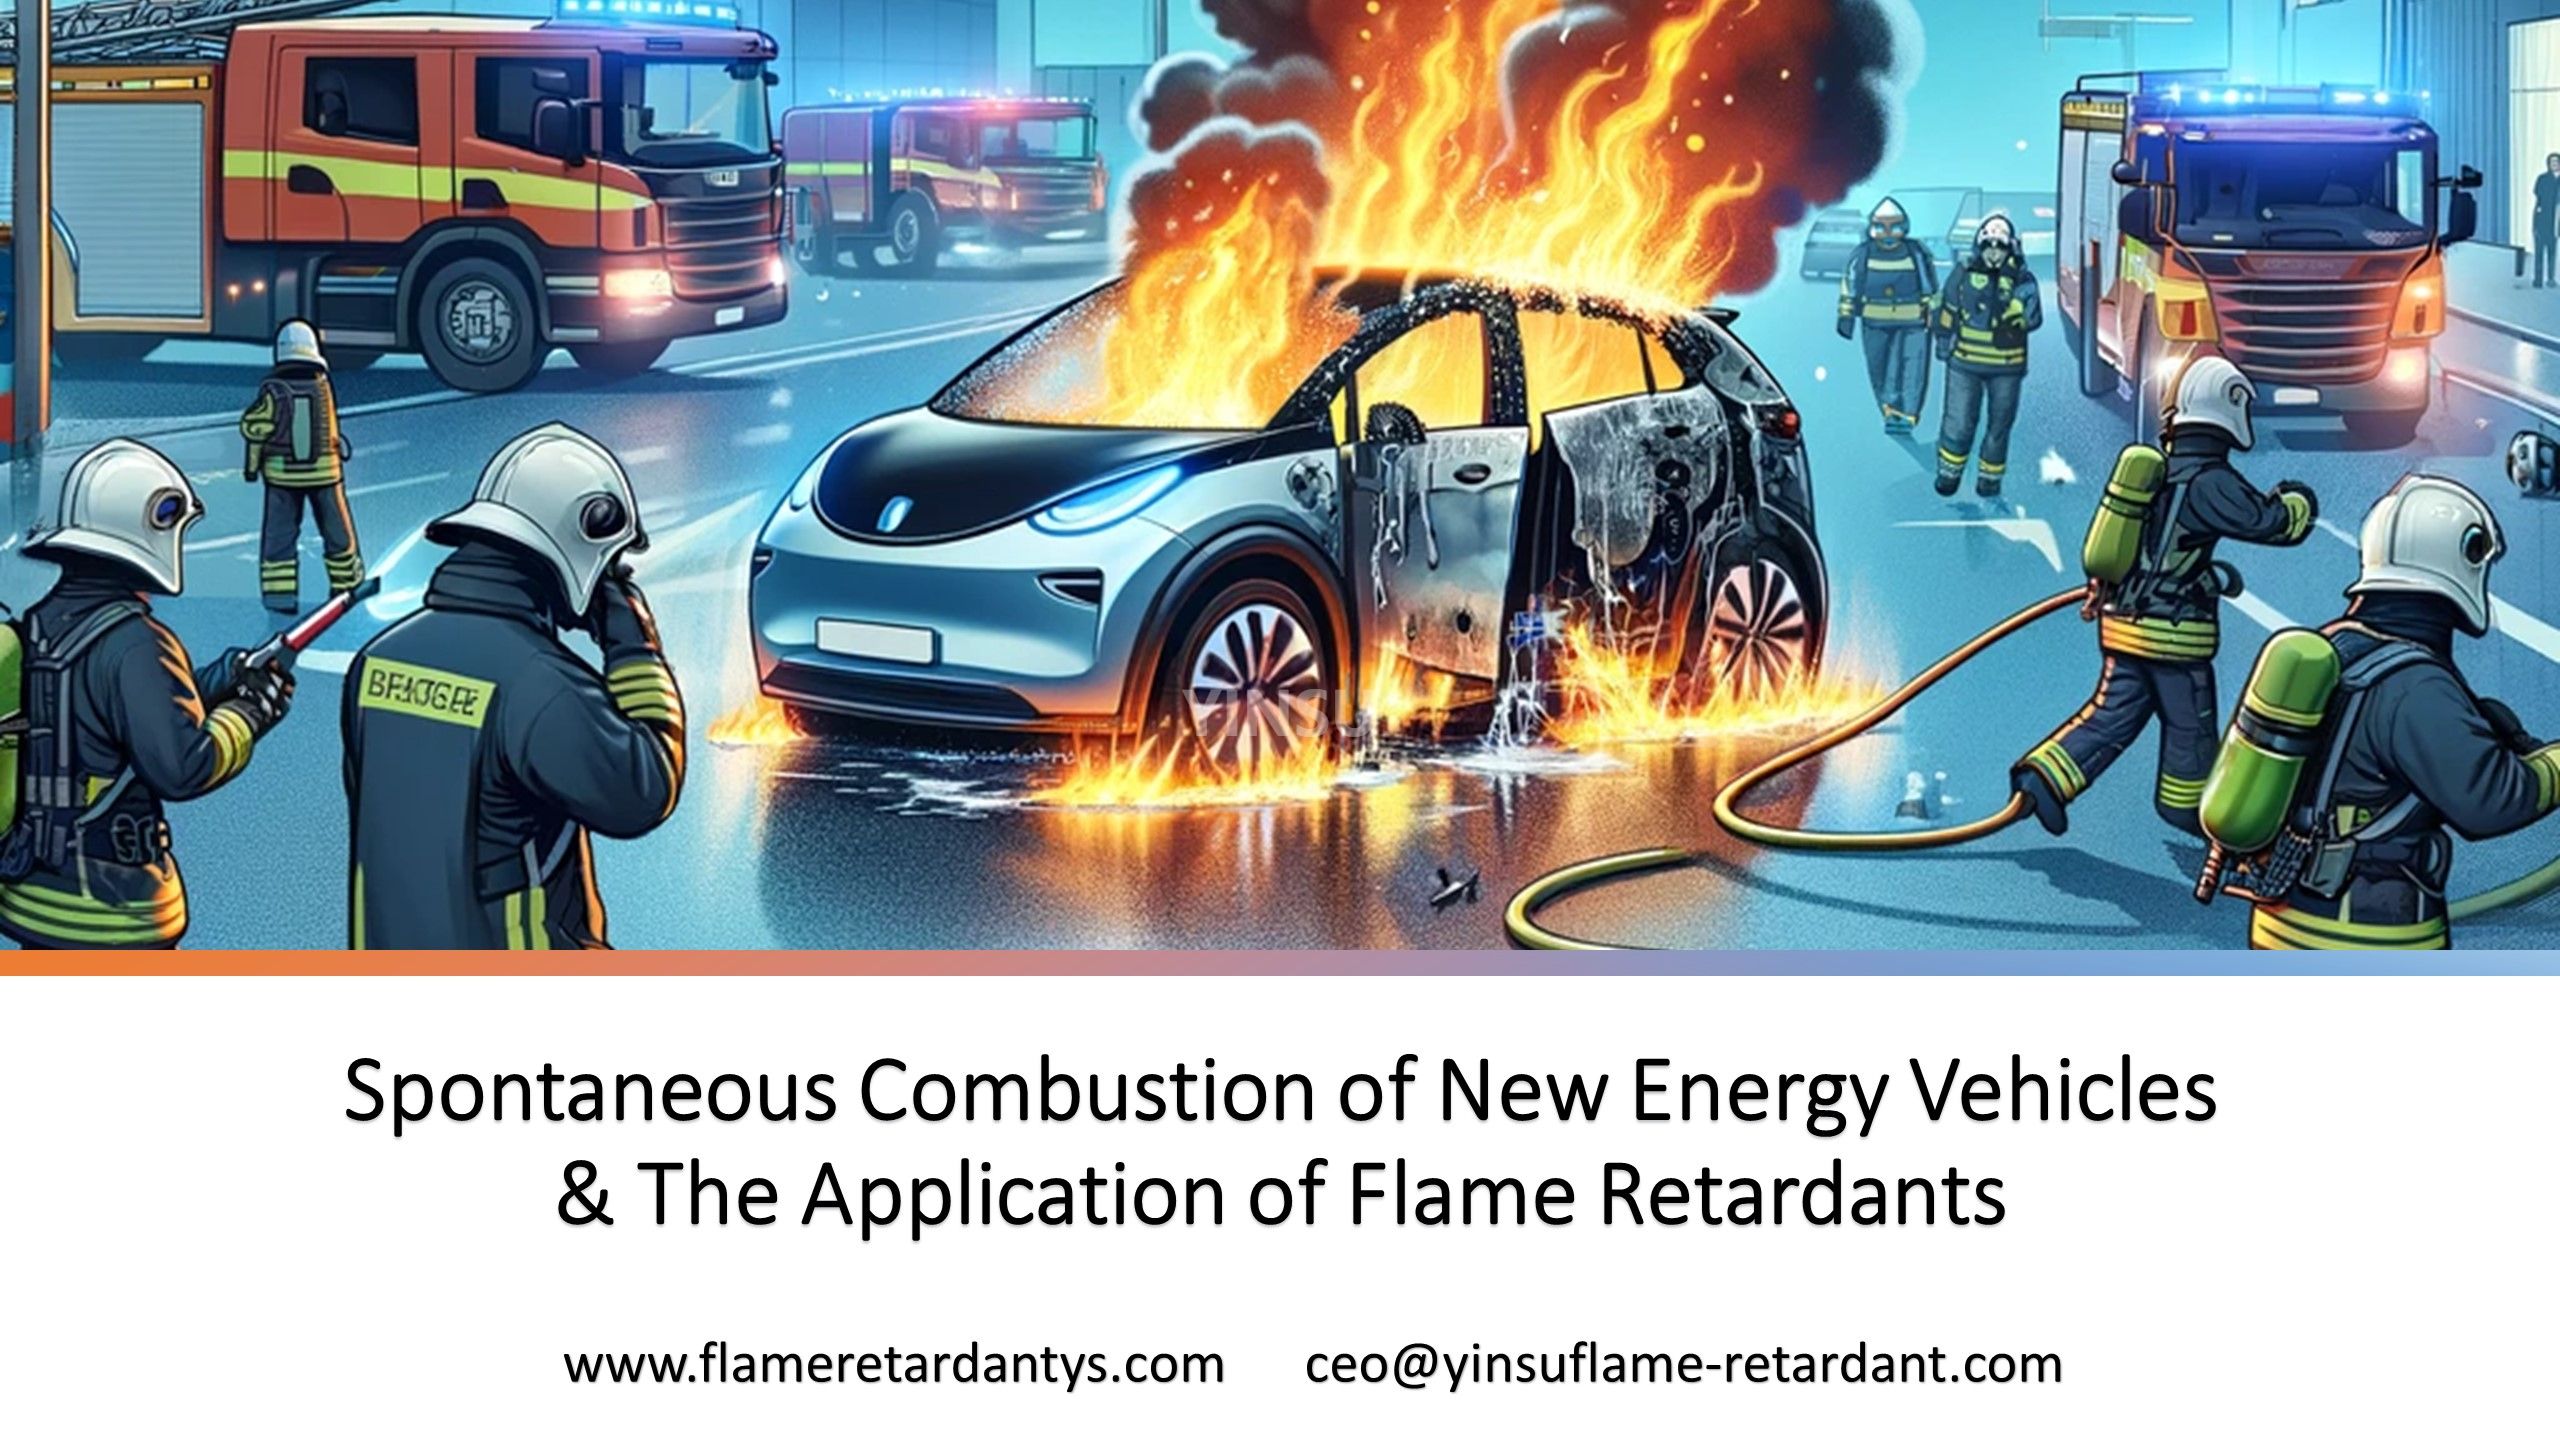 Самовозгорание транспортных средств на новой энергии и применение антипиренов